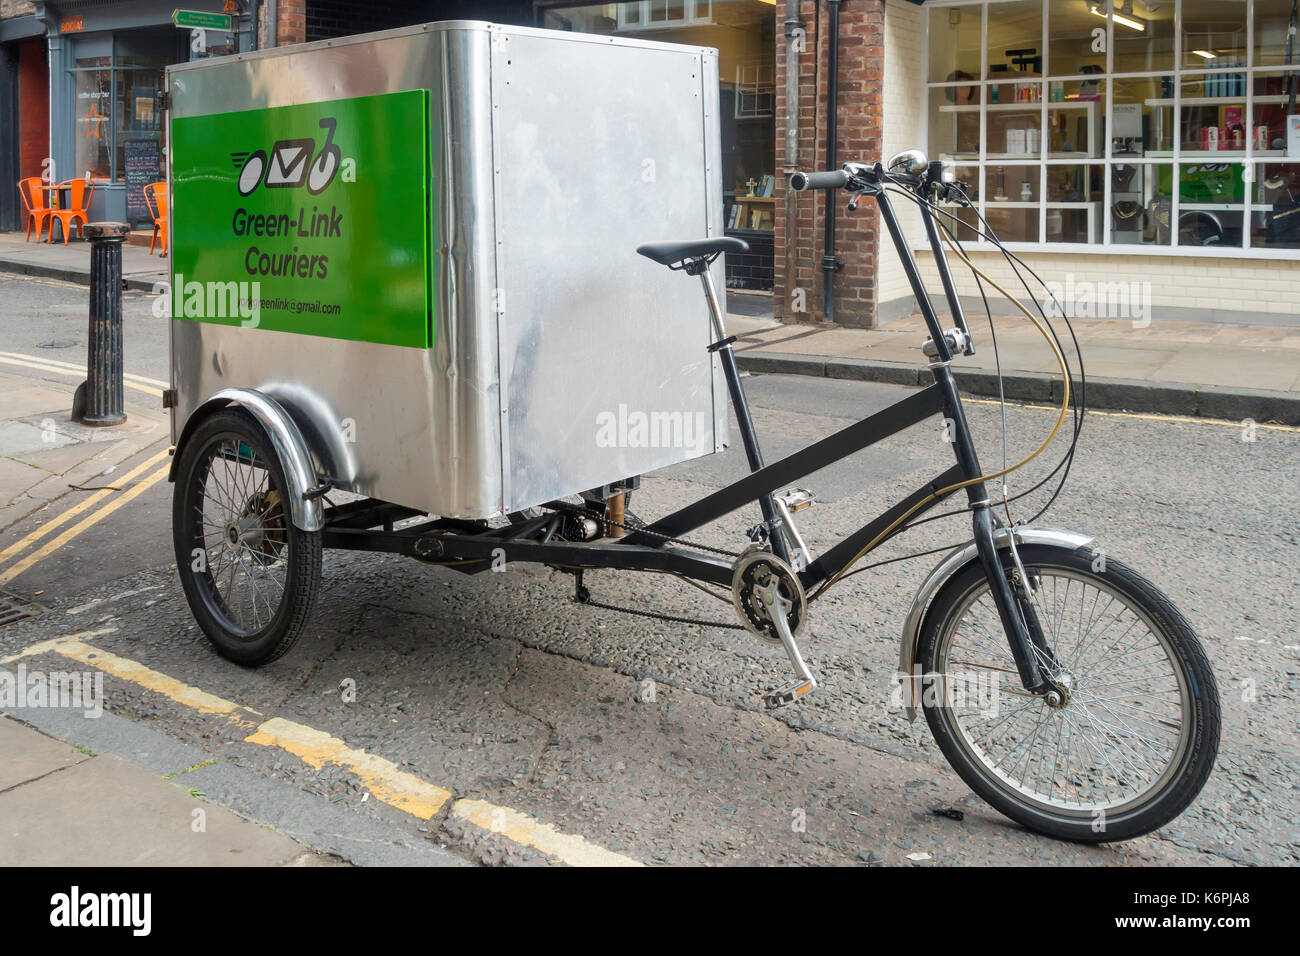 Einen geparkten Grünen Link Dreirad mit einem großen Staufach für Fracht, die eine lokal emissionsfreie Kostenlose Lieferung in York. Stockfoto